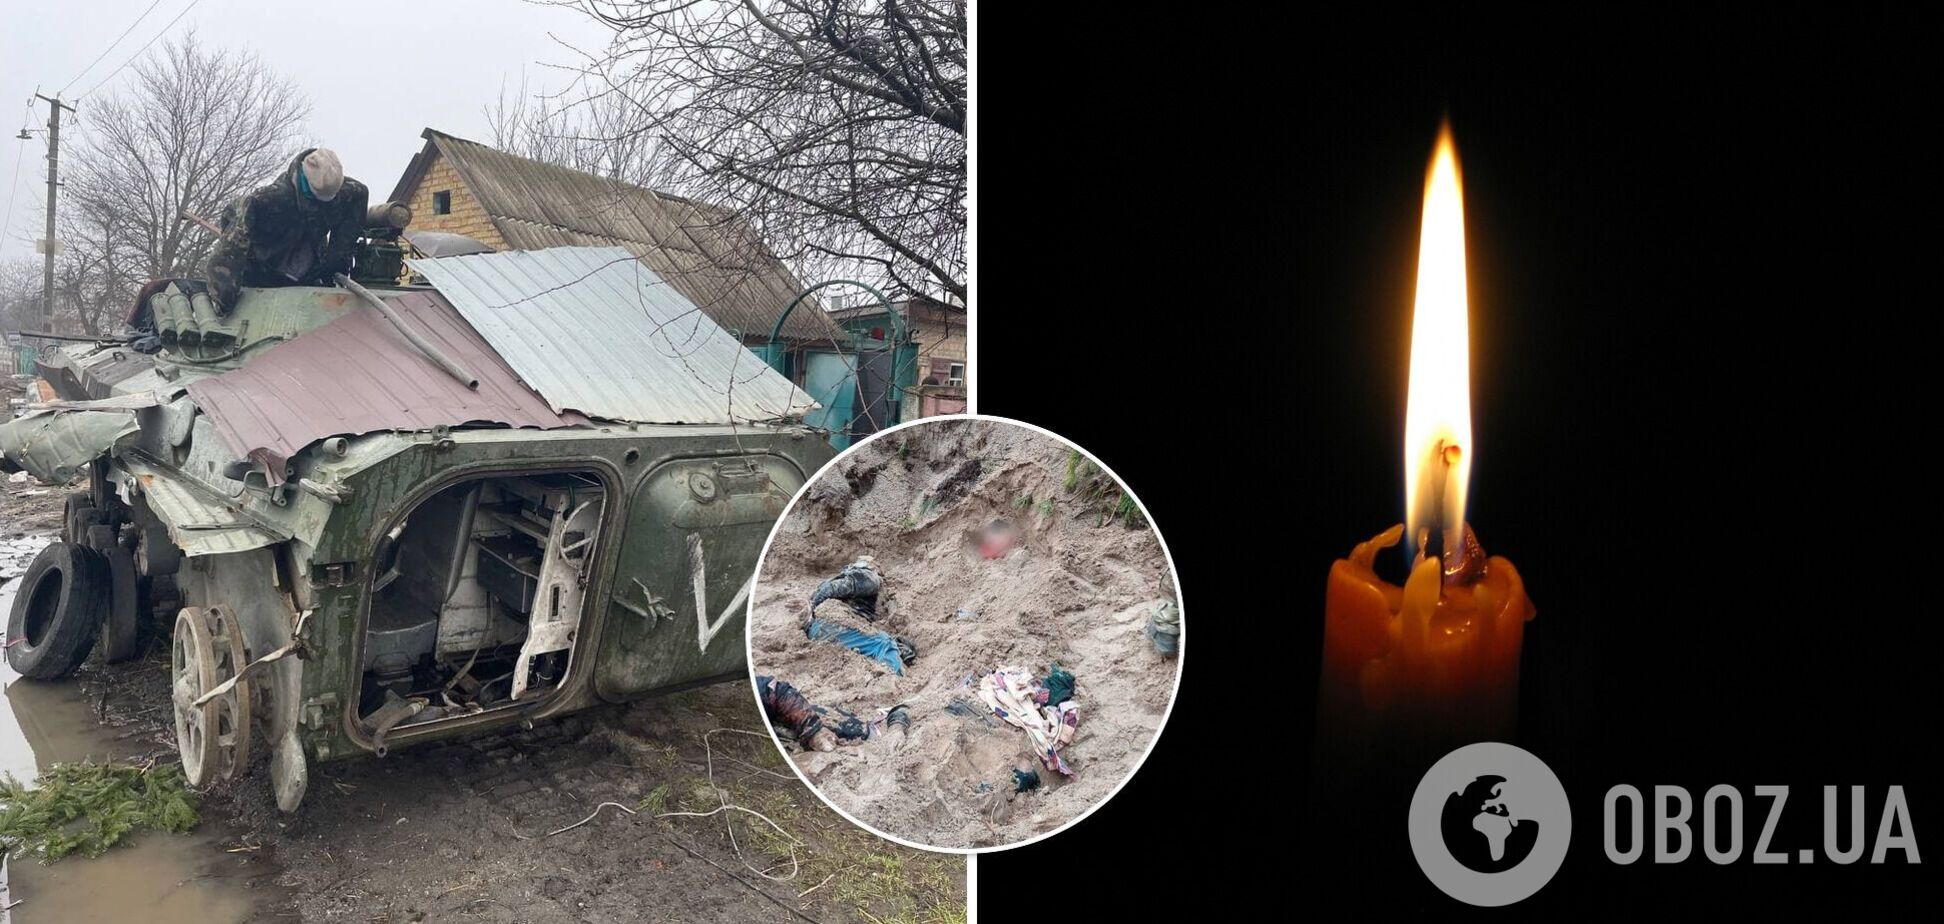 В освобожденном Мотыжине нашли братскую могилу мирных жителей: оккупанты убивали людей со связанными руками. Фото 18+